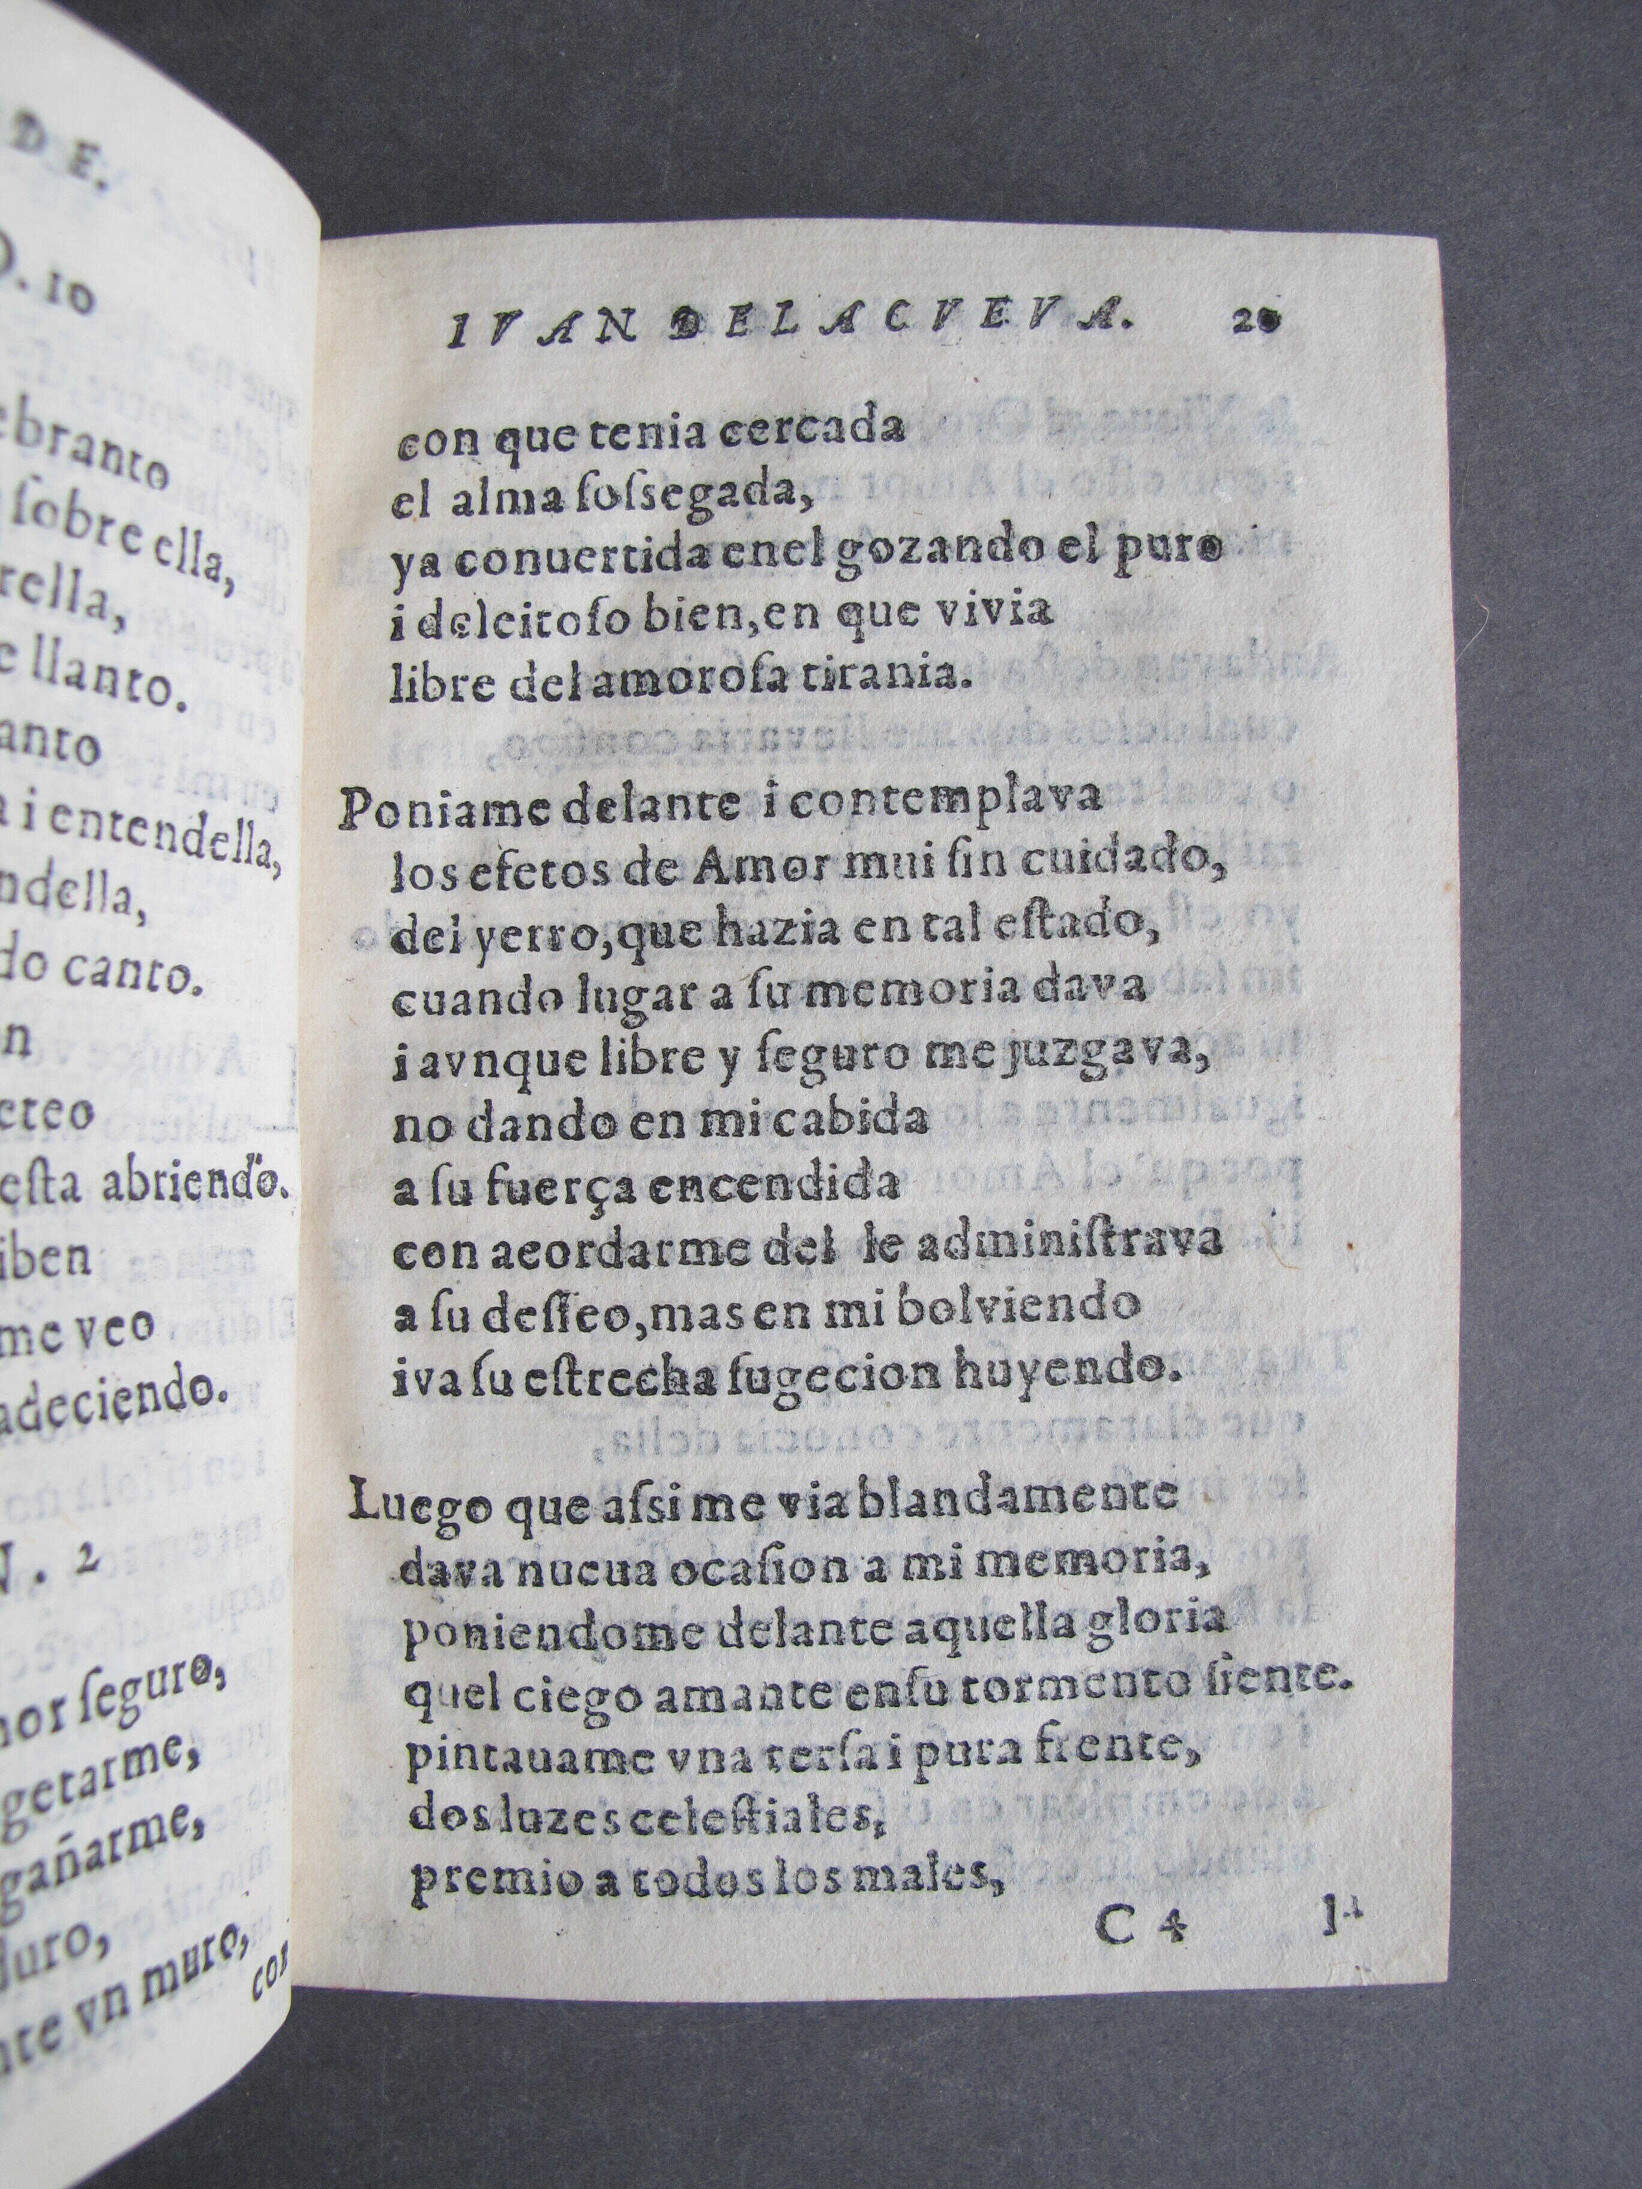 Folio C4